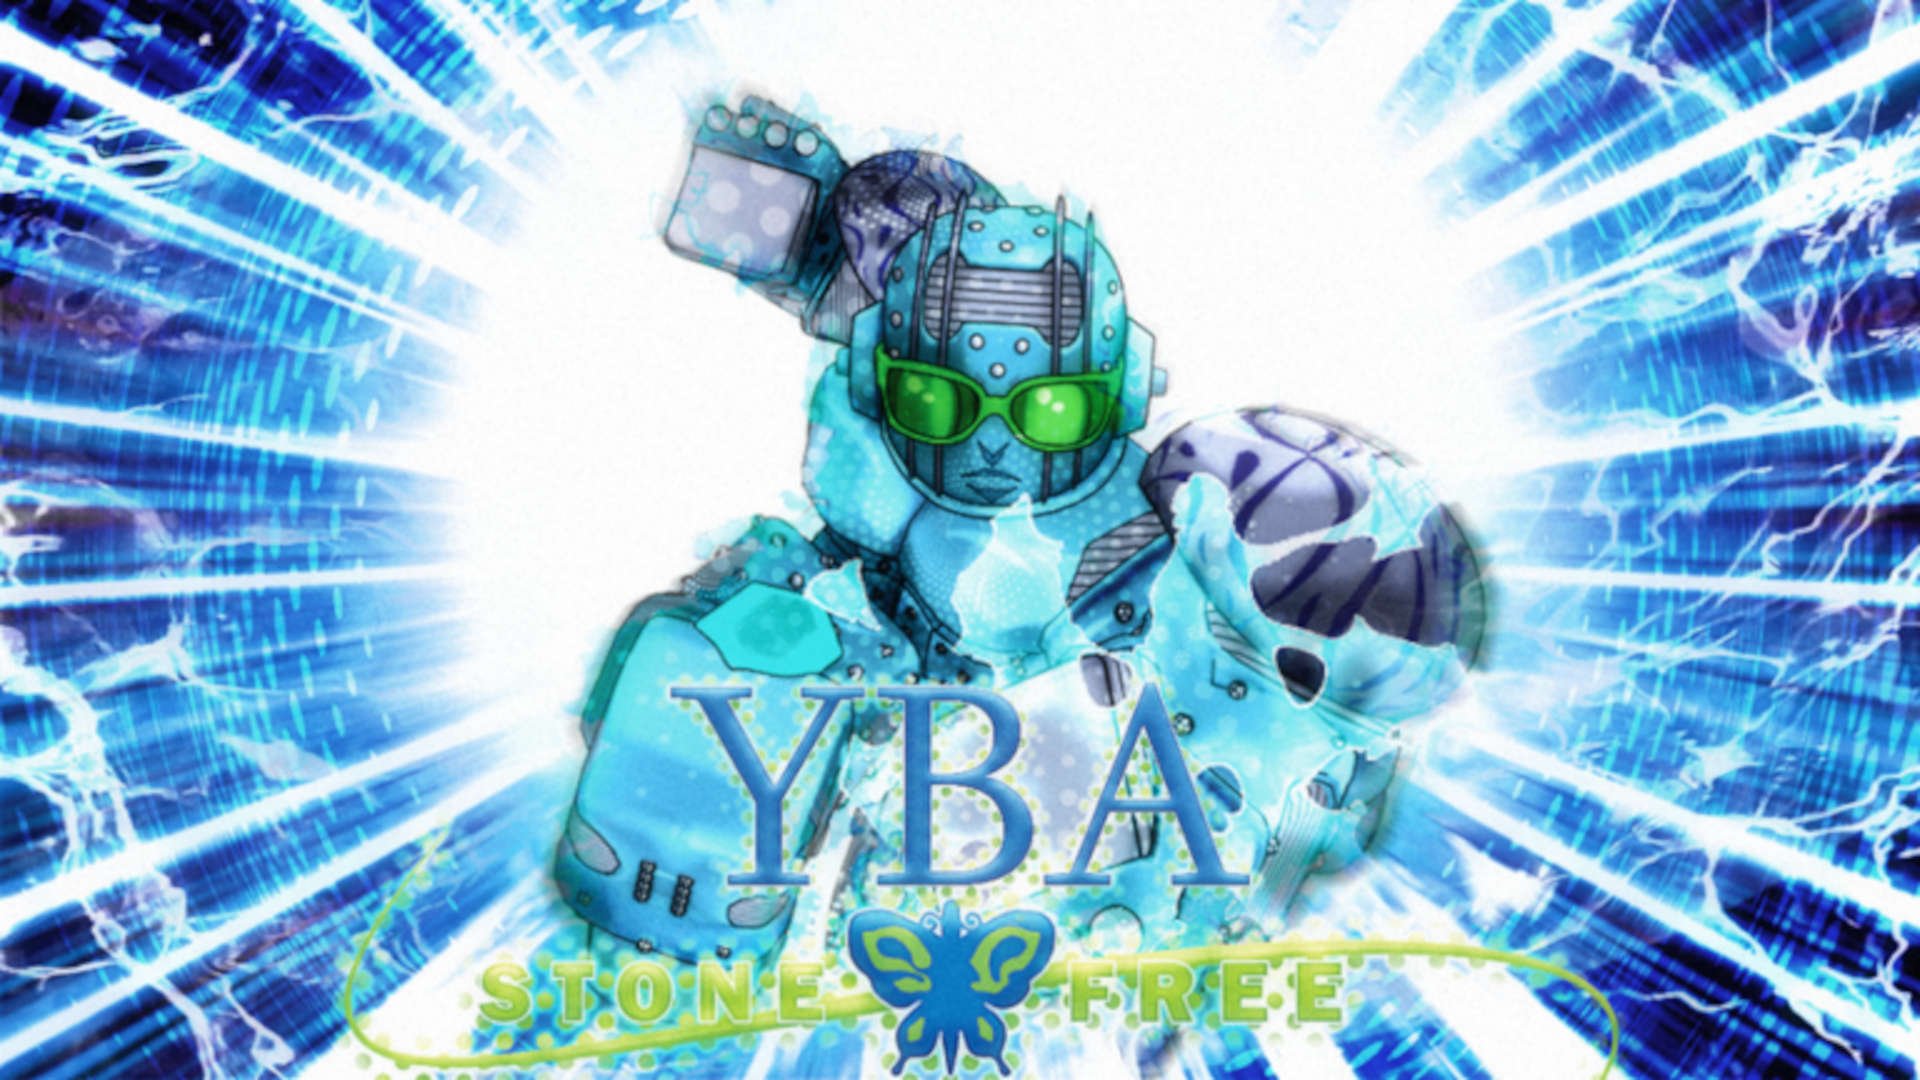 The YBA logo